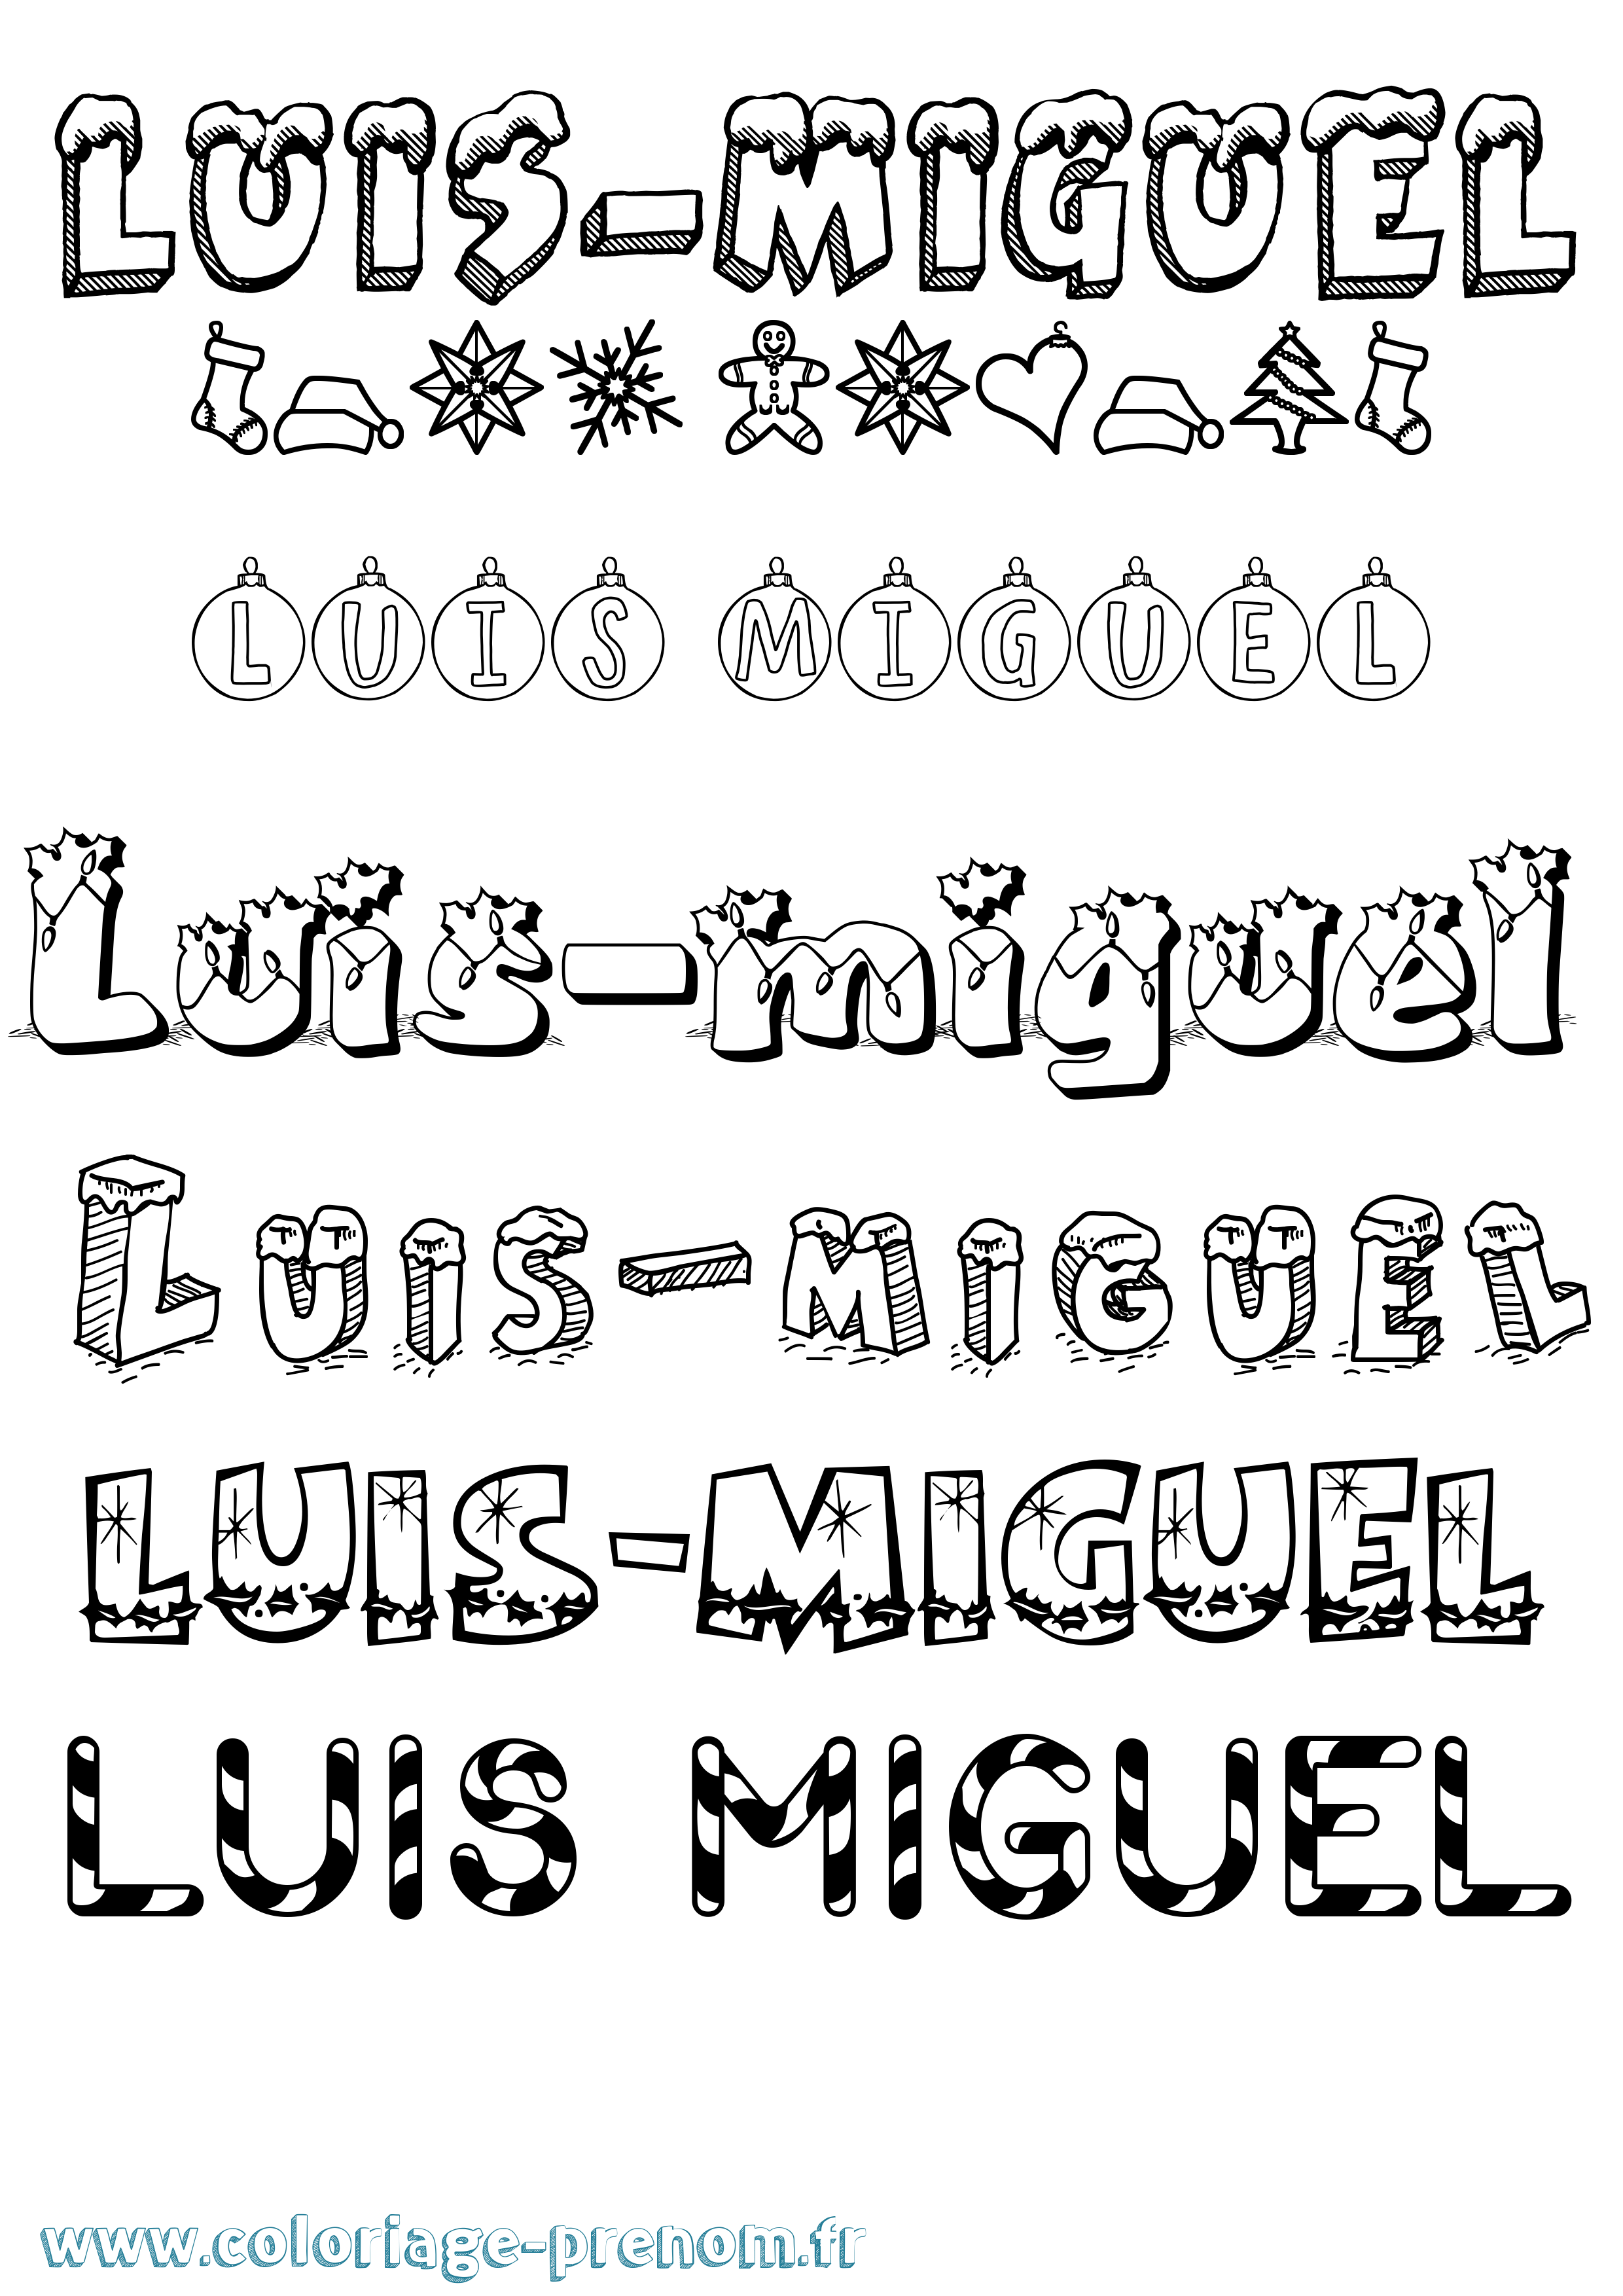 Coloriage prénom Luis-Miguel Noël